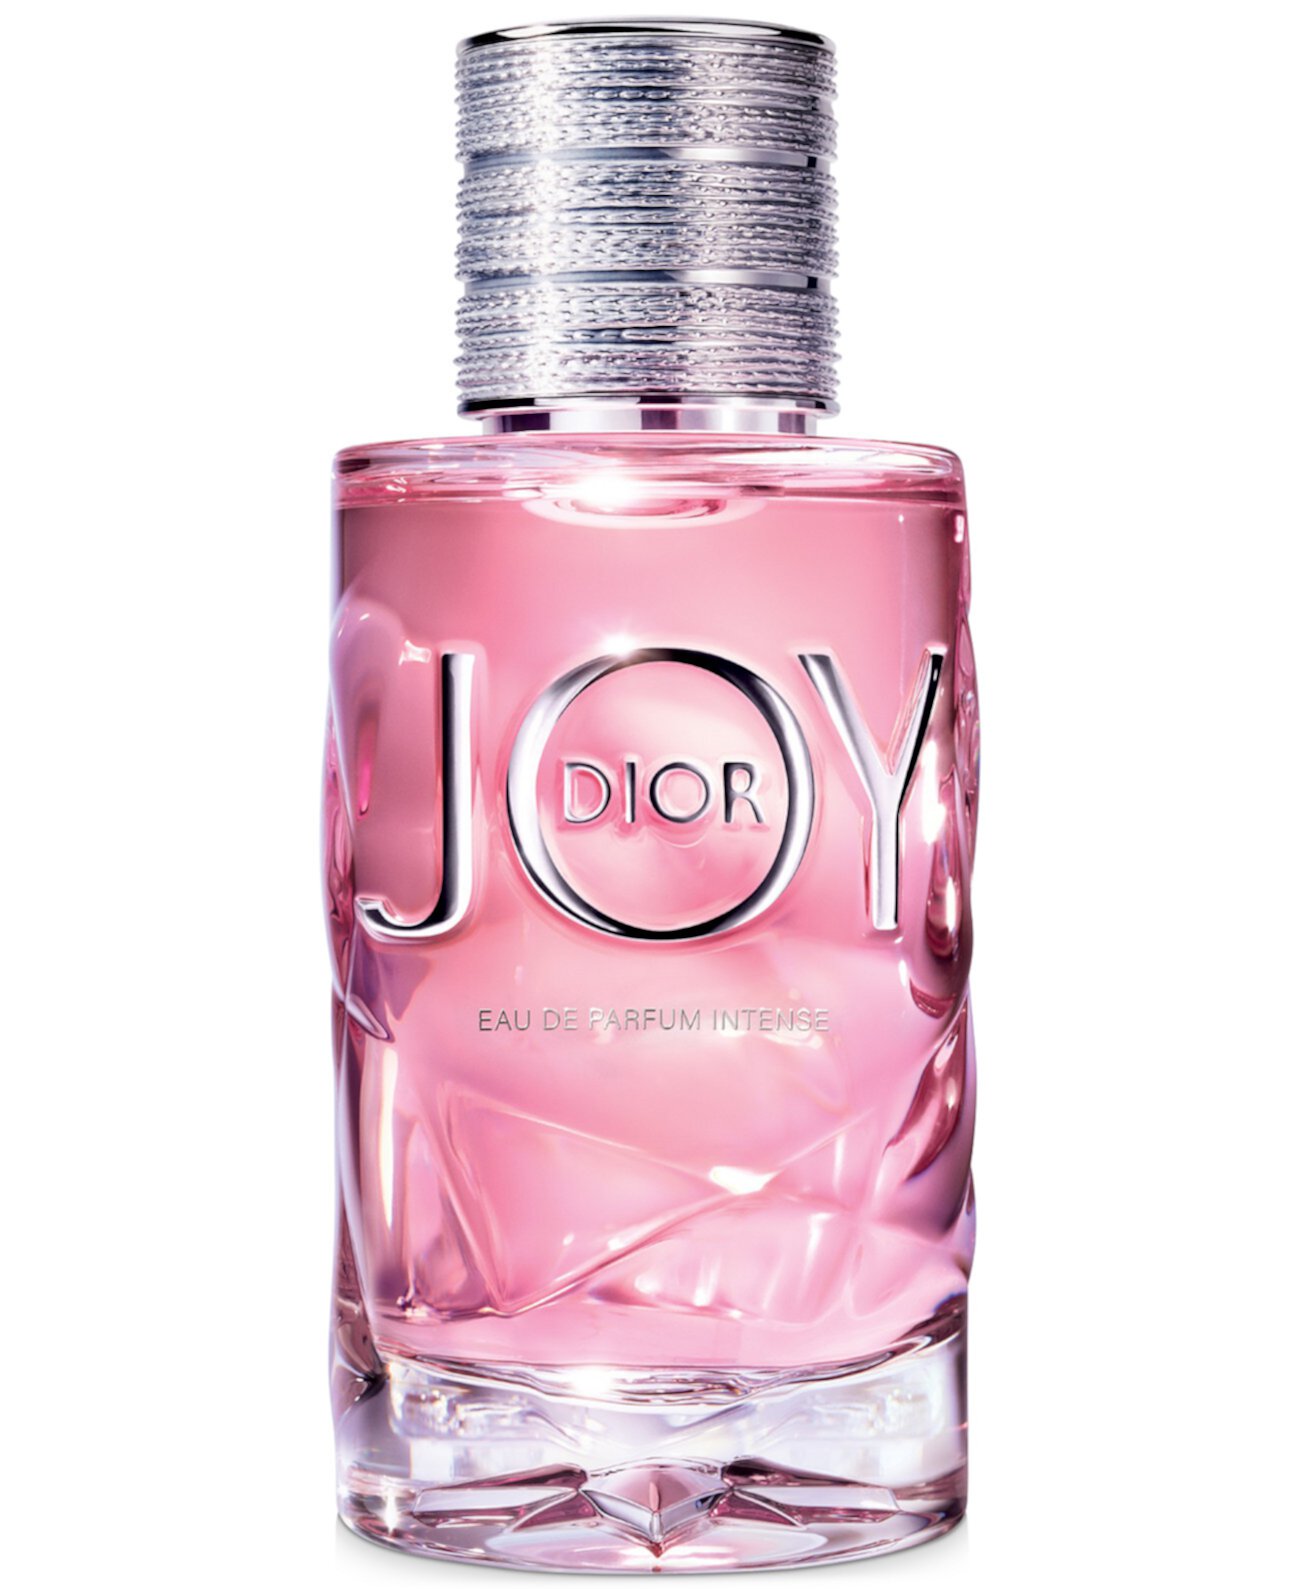 Интенсивный спрей JOY от Dior в концентрации Eau de Parfum, 3 унции. Dior